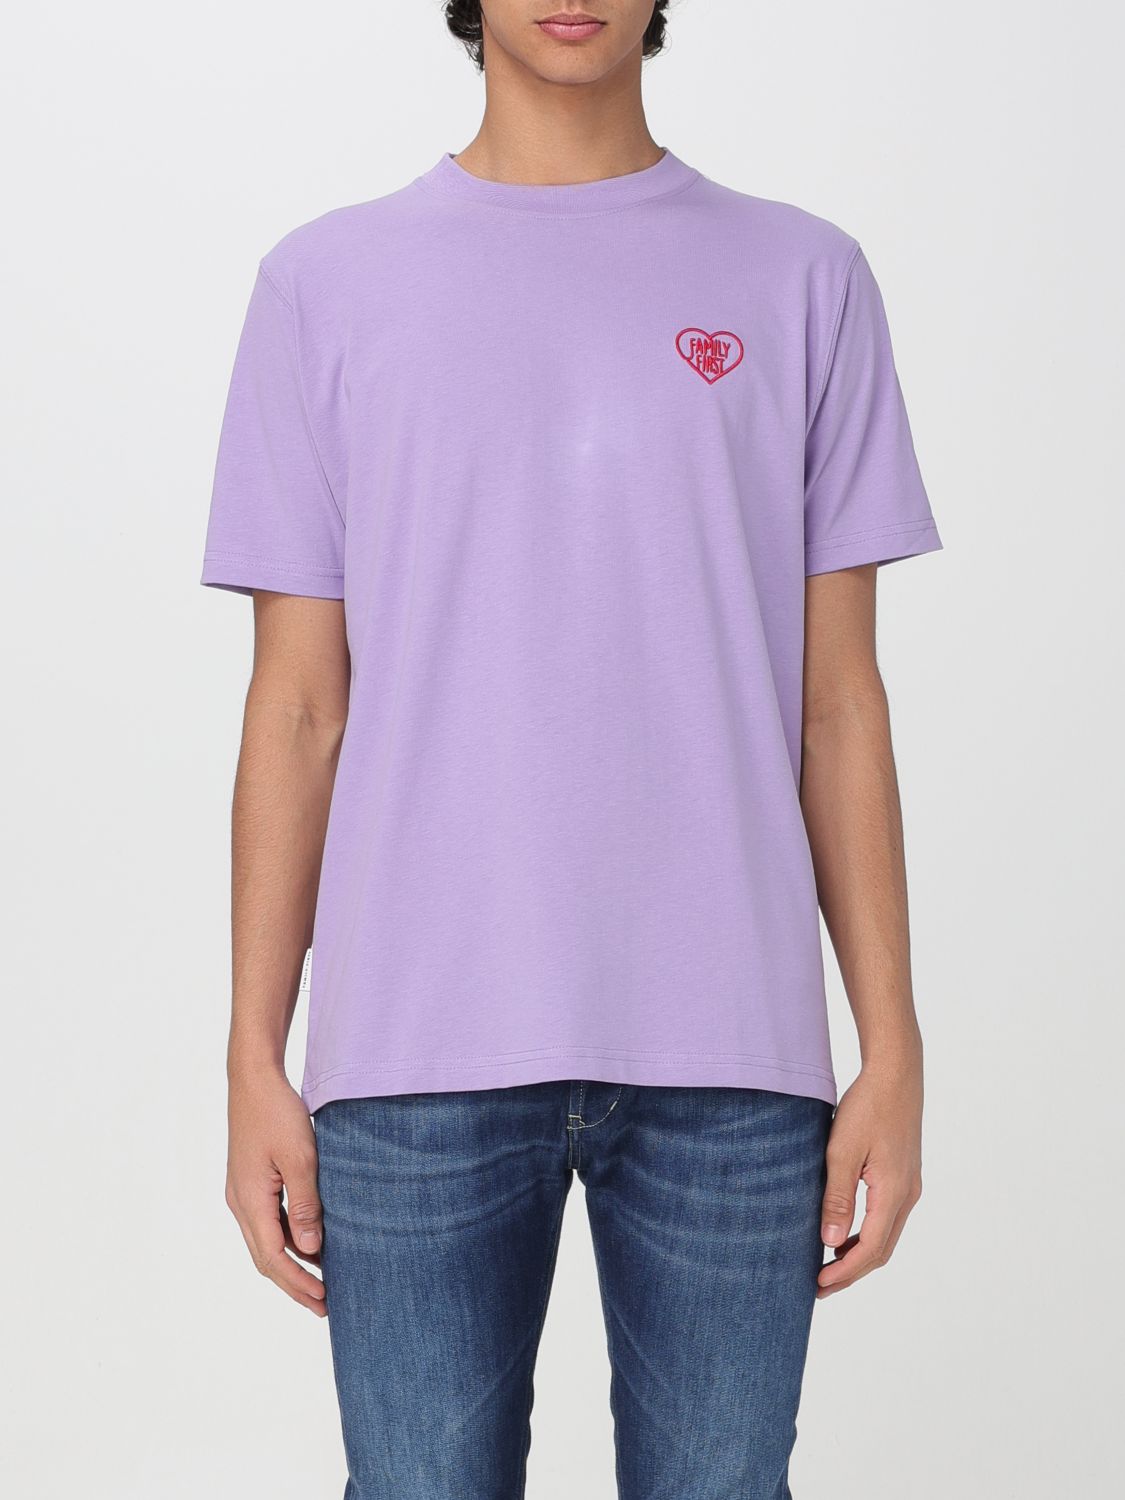 t-shirt family first men colour violet